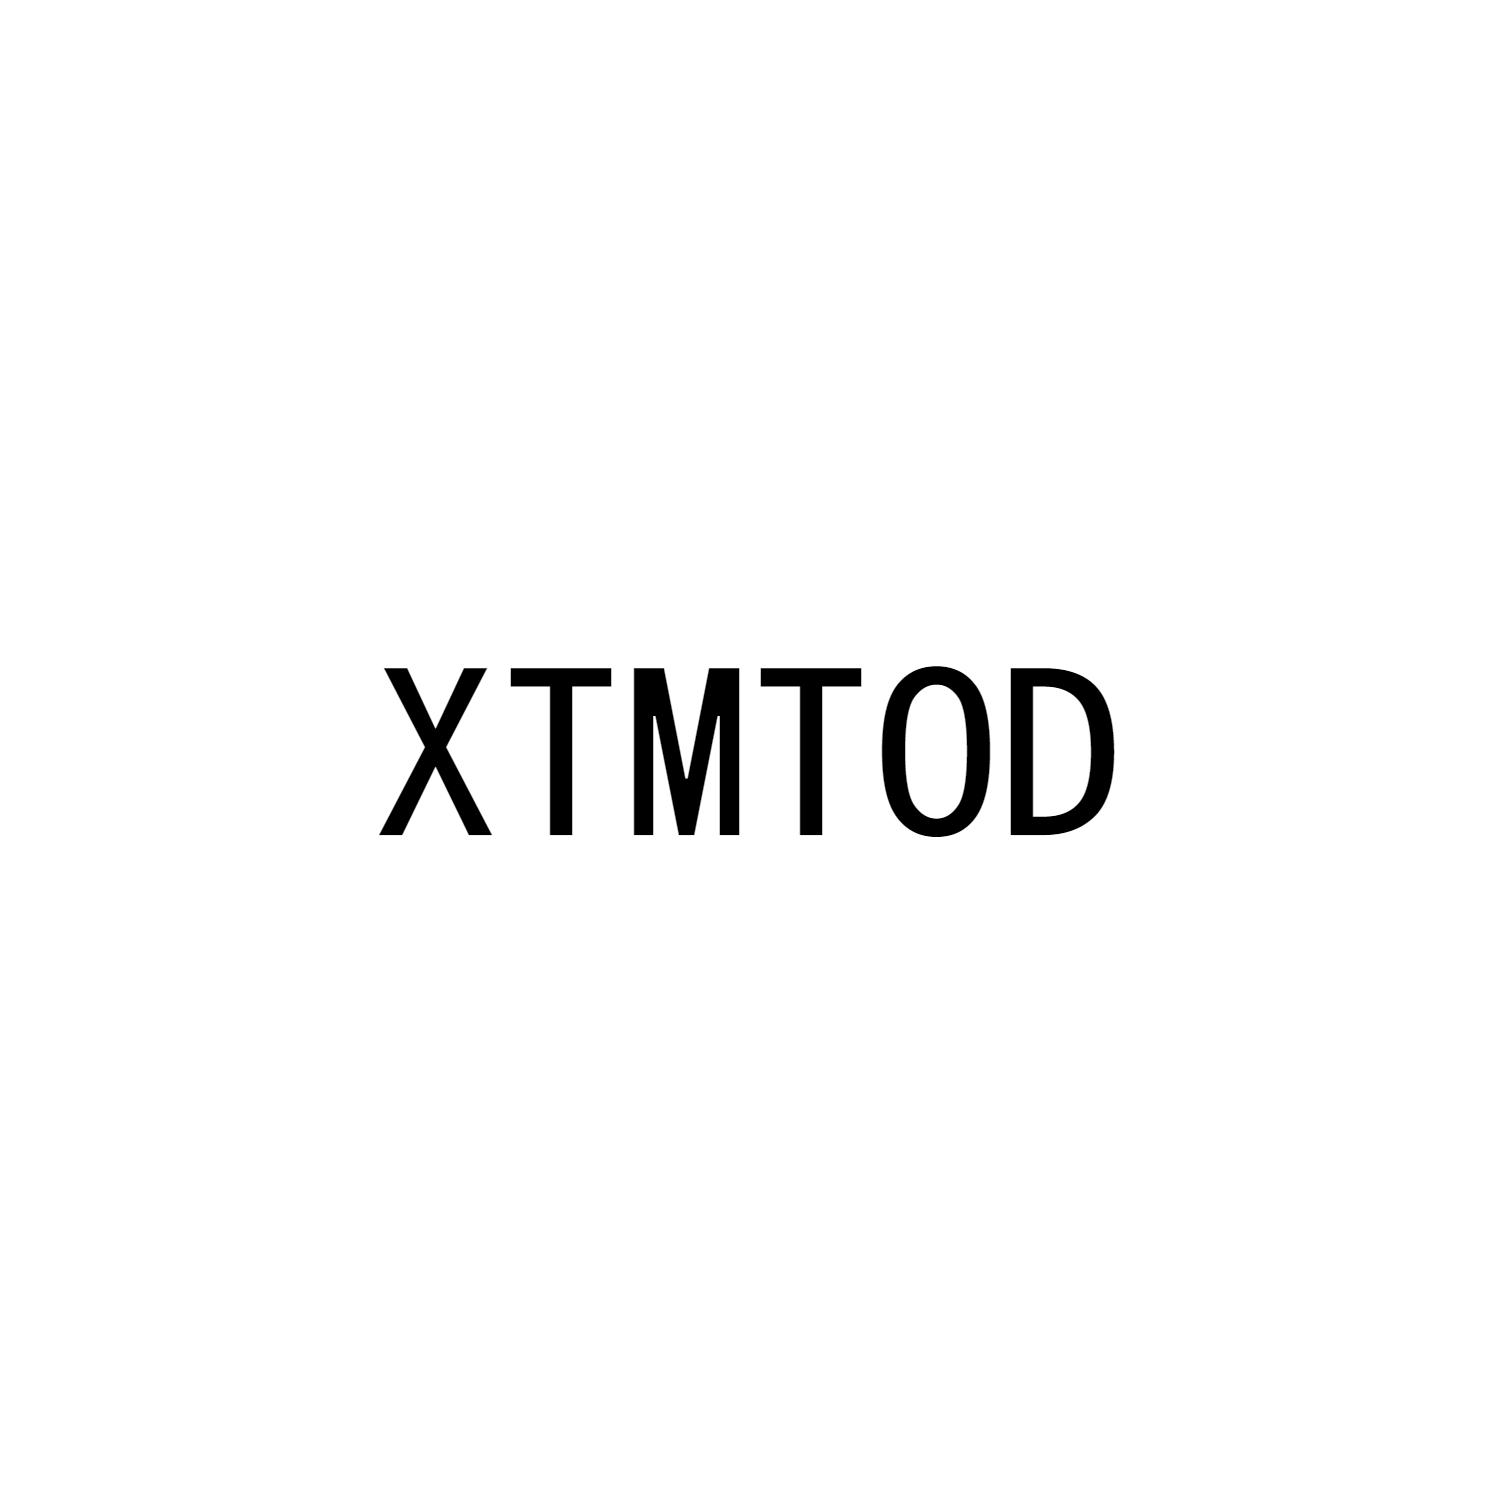 XTMTOD